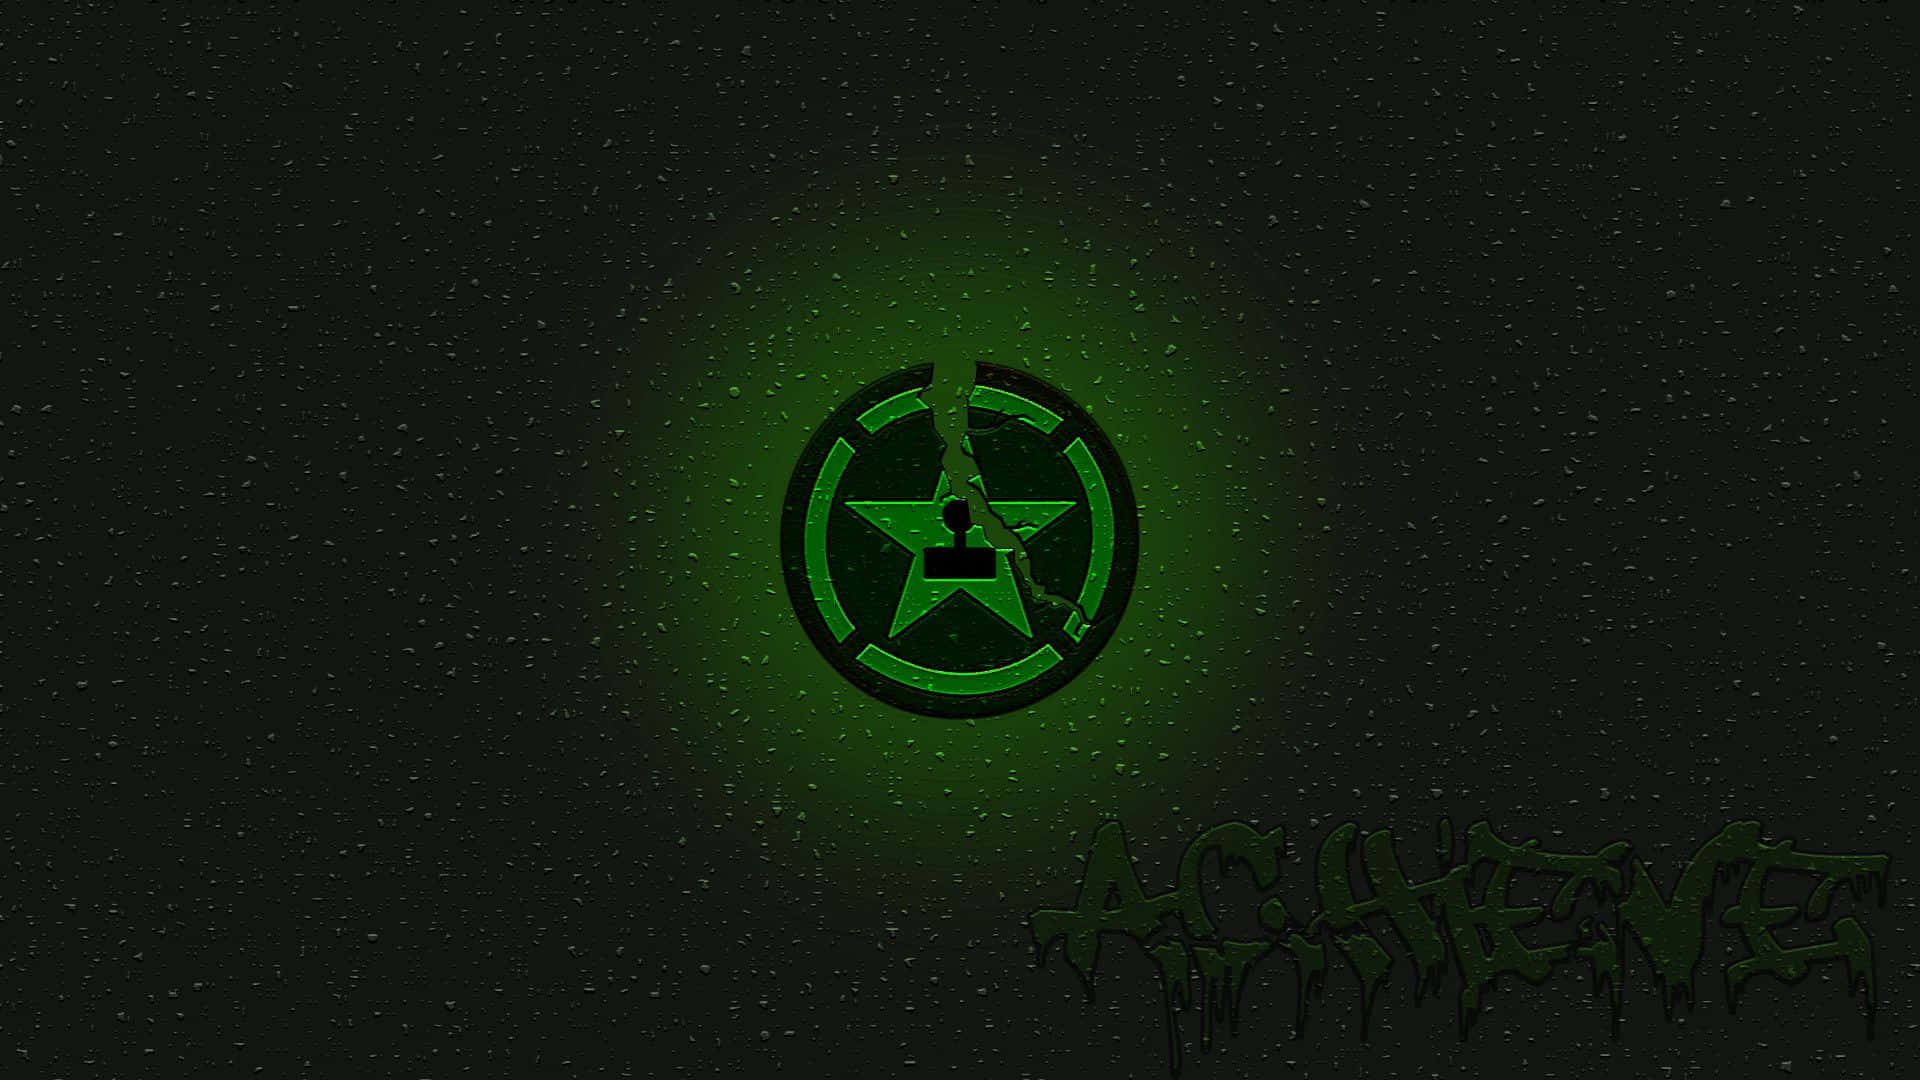 Eingrünes Logo Mit Schwarzem Hintergrund. Wallpaper